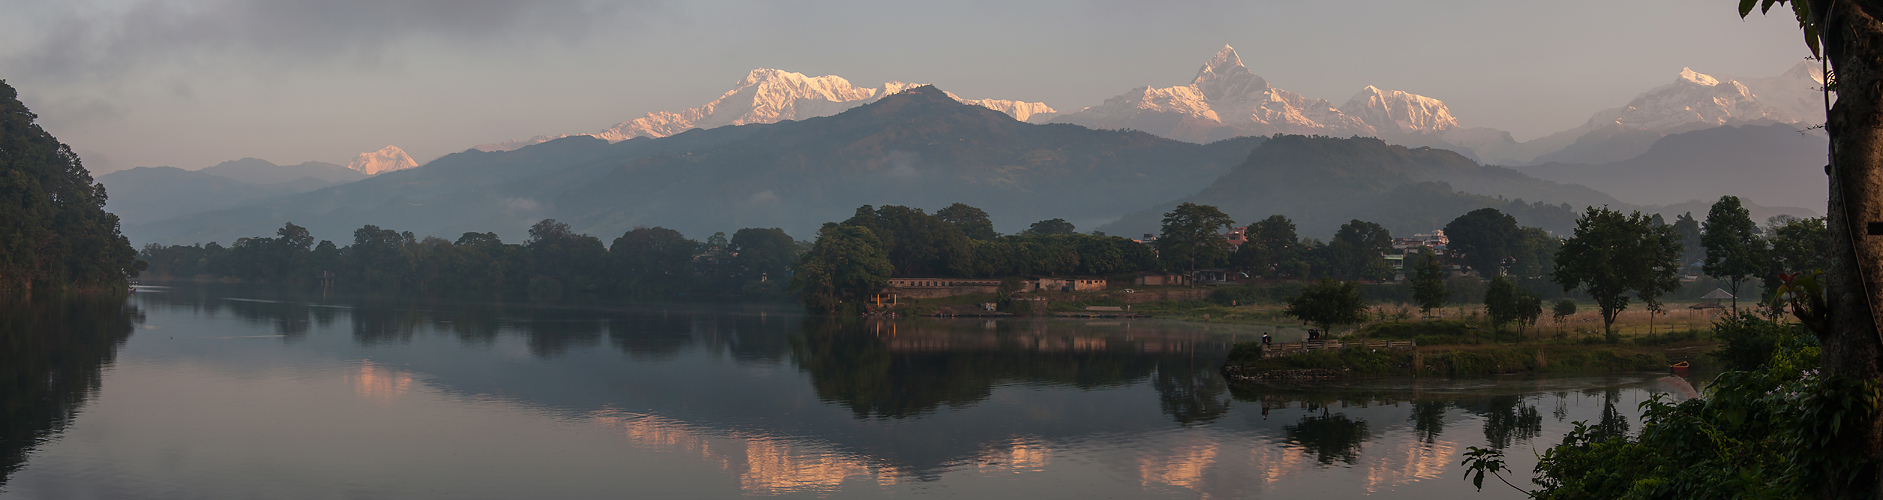 Phewa Lake in Pokhara (Nepal) von Dietrich Kunze